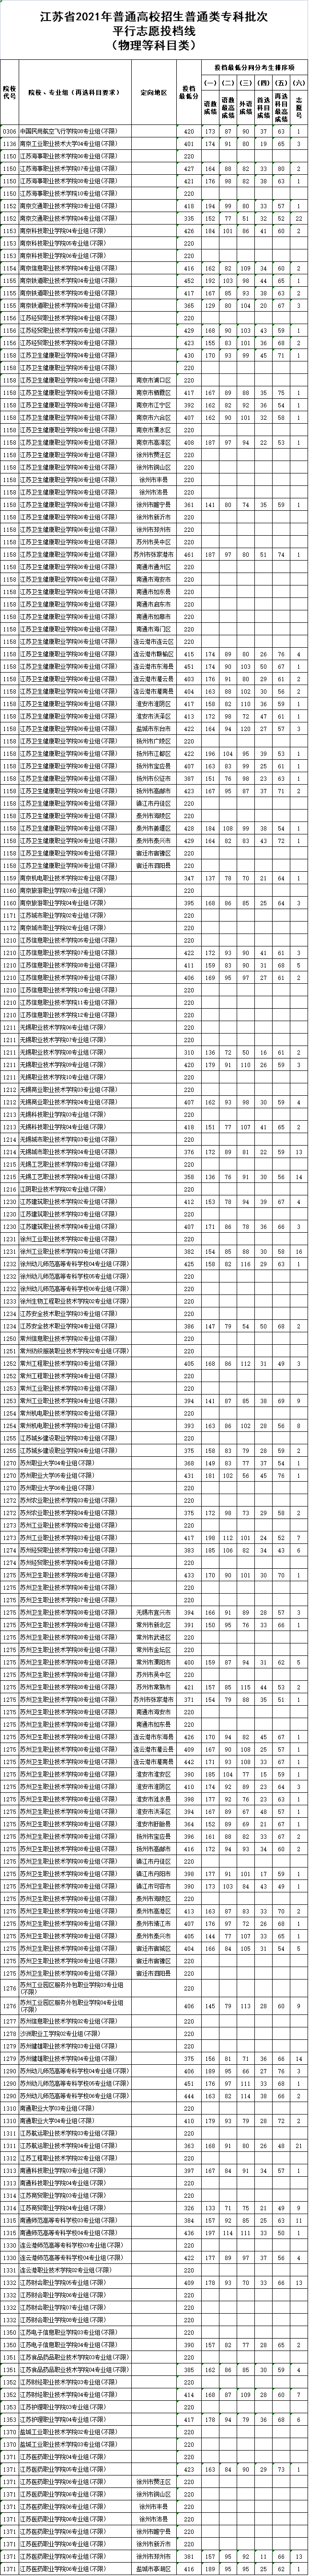 江苏专科征集志愿的院校2021 江苏专科征集志愿的院校名单